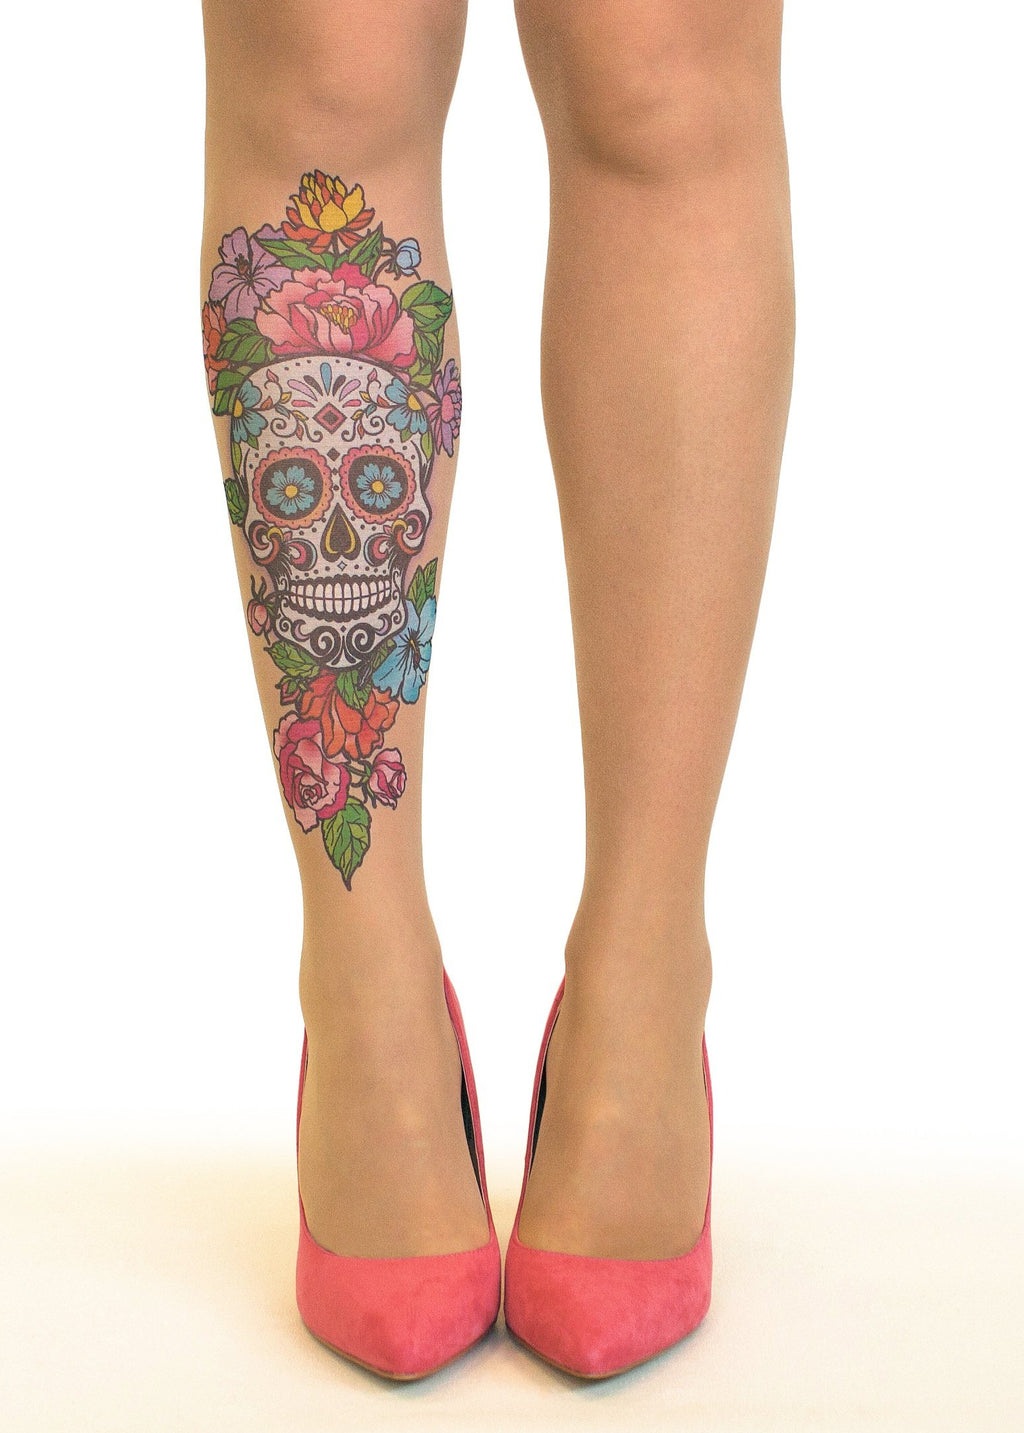 Sugar Skull Tattoo Printed Sheer Tights at Ireland's Online Shop –  DressMyLegs